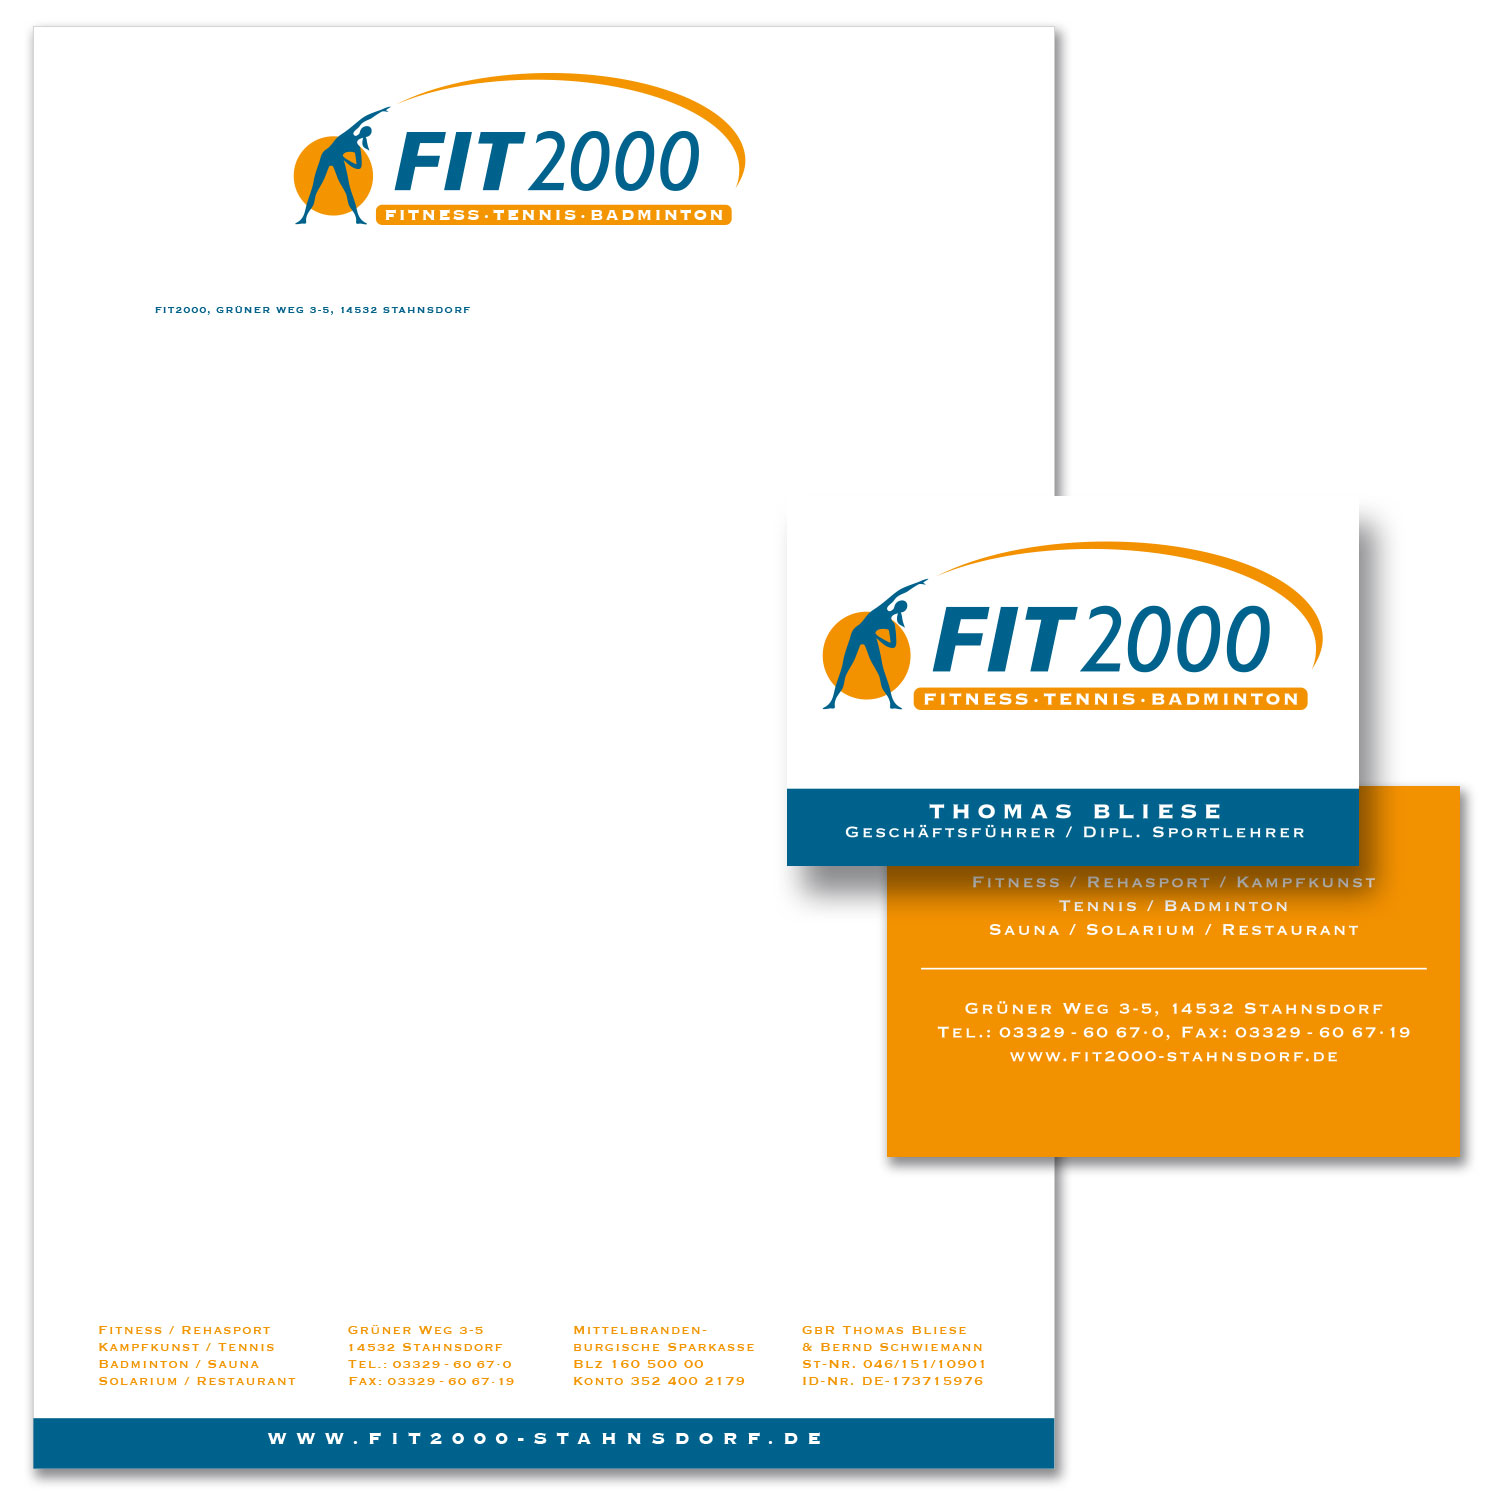  FIT 2000 | Fitnessclub 